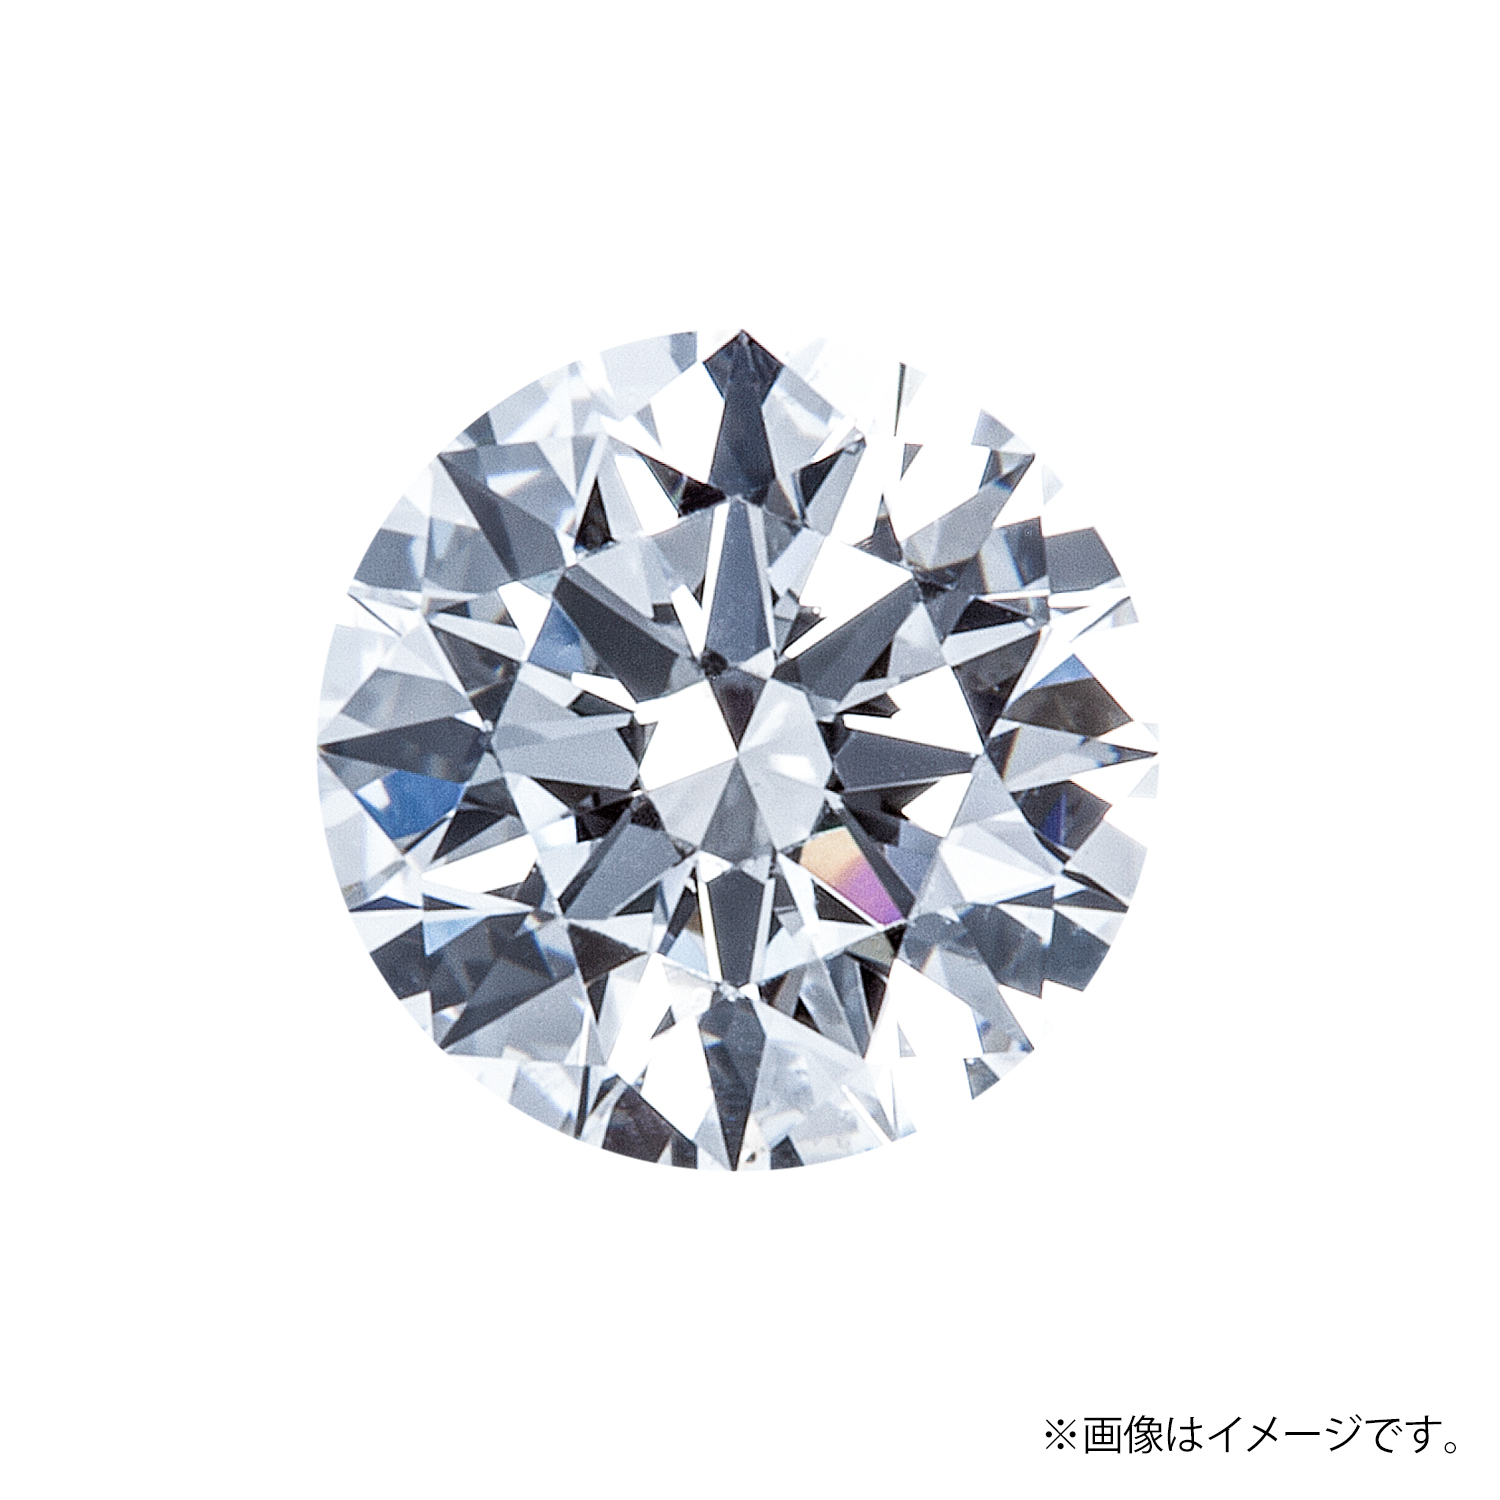 0.200ct Round ダイヤモンド / F / VS2 / 3EX-H&C